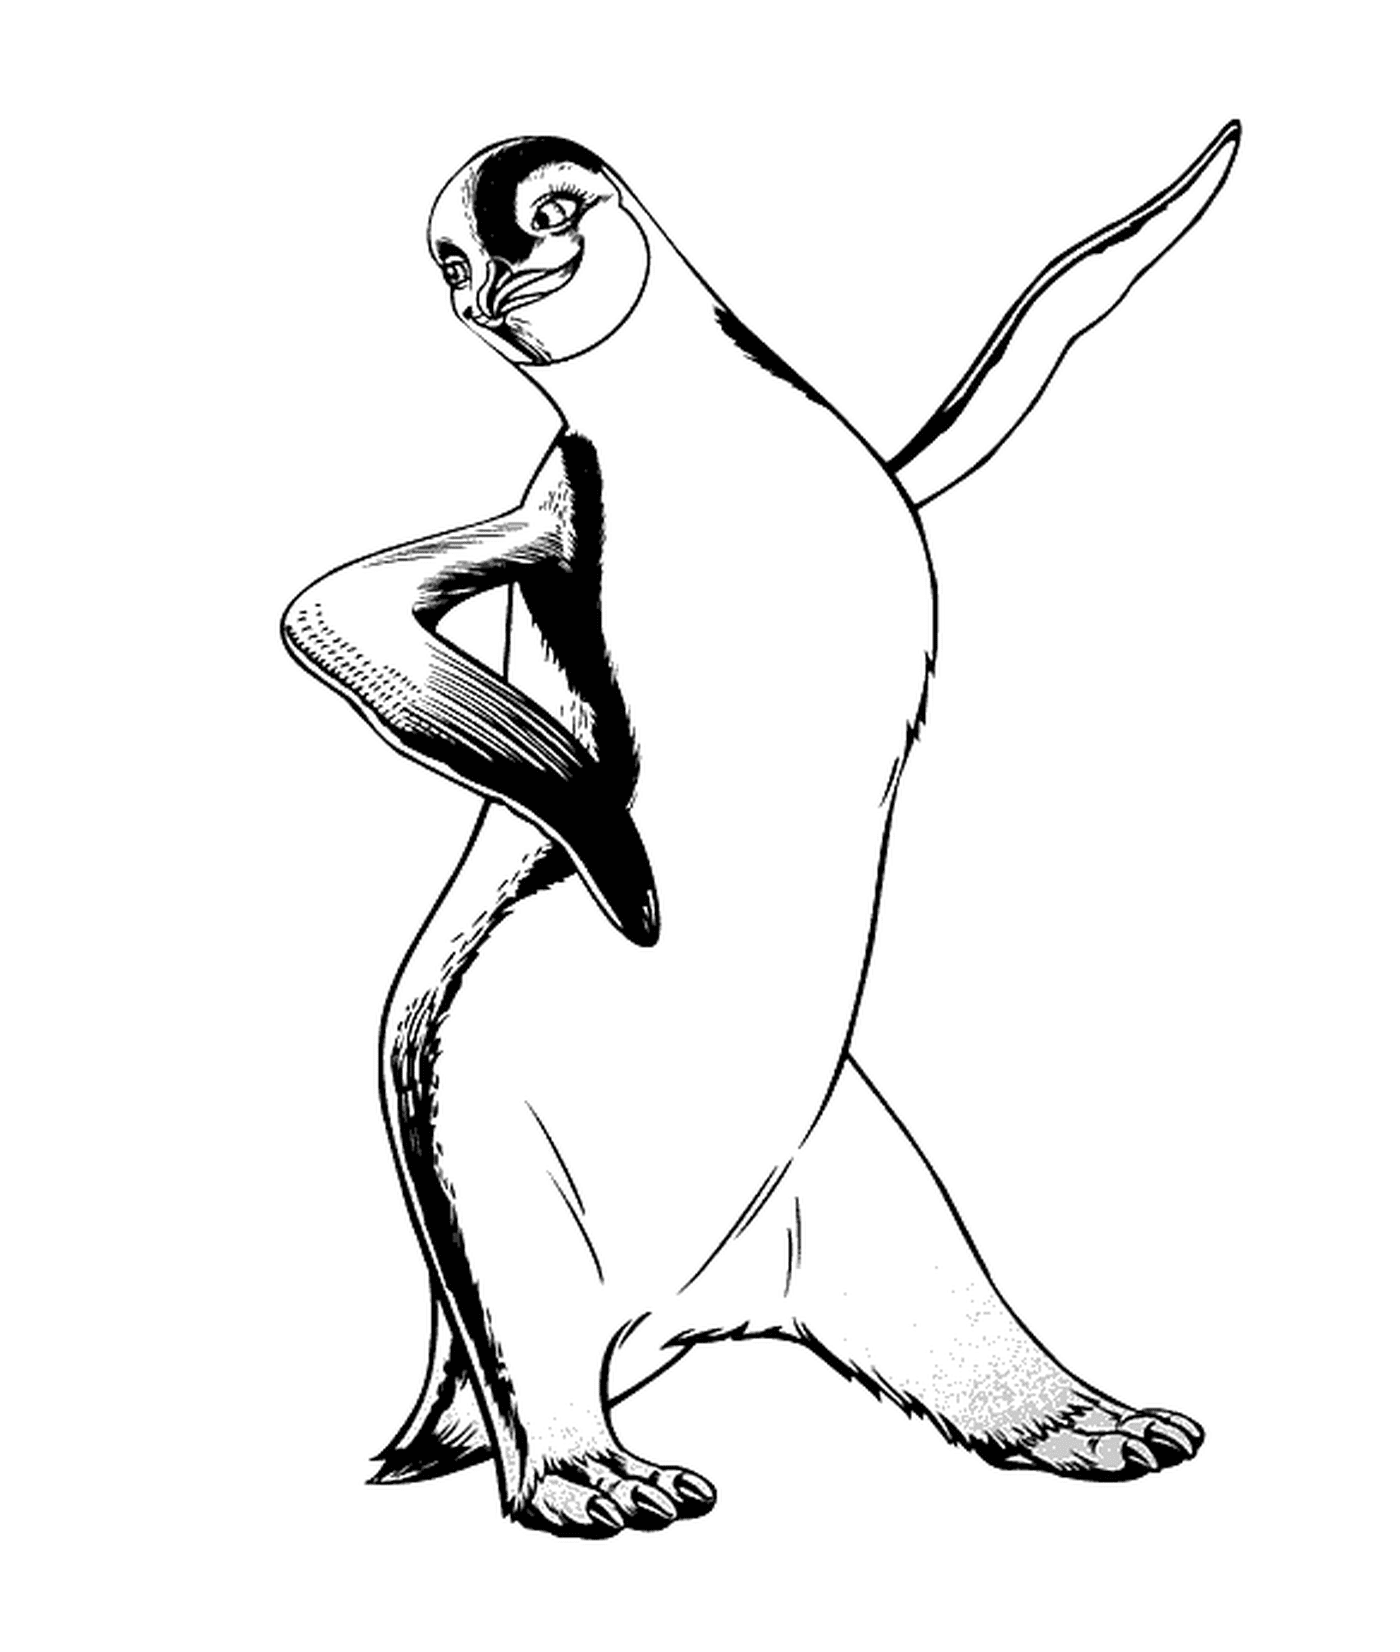  Pinguim dançando com entusiasmo 